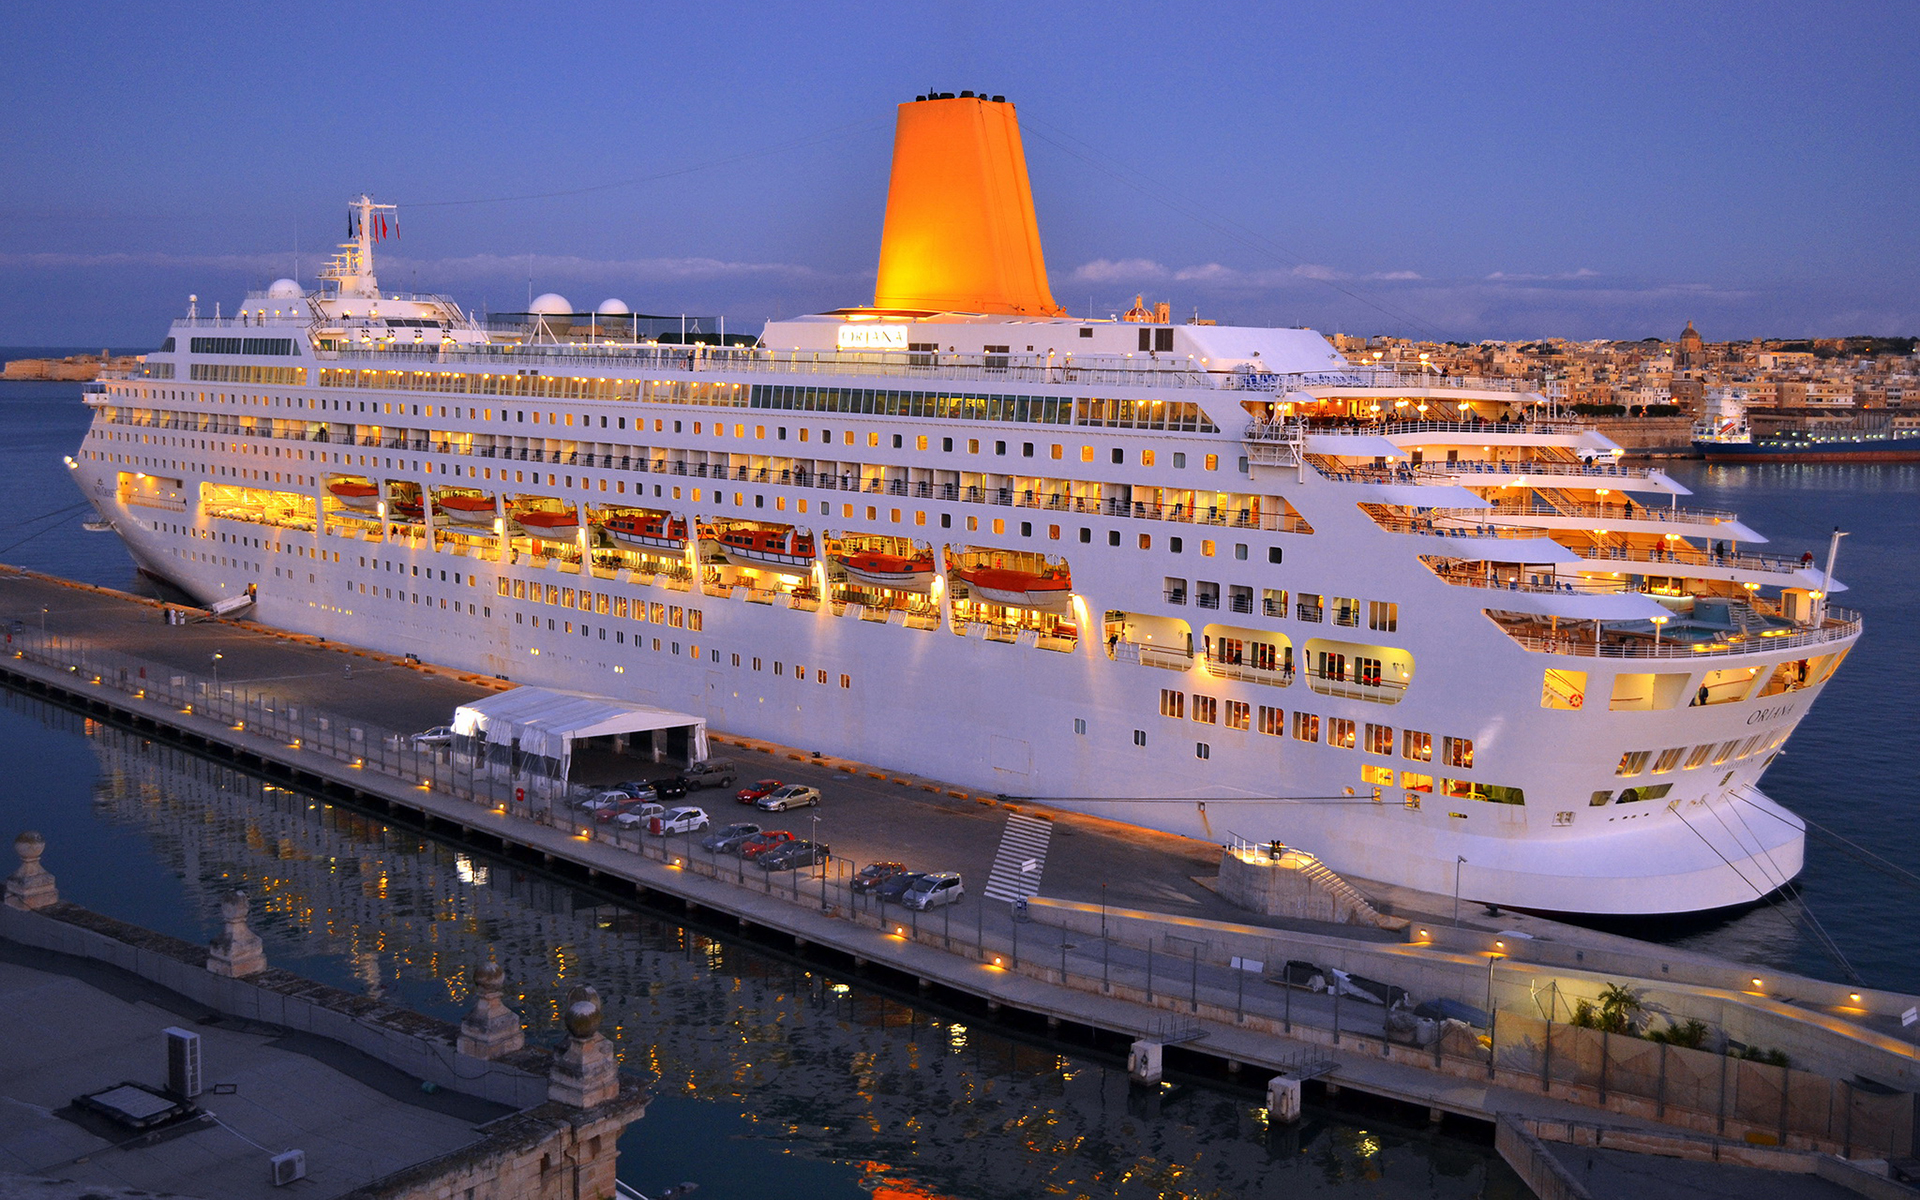 Cruise ship oriana